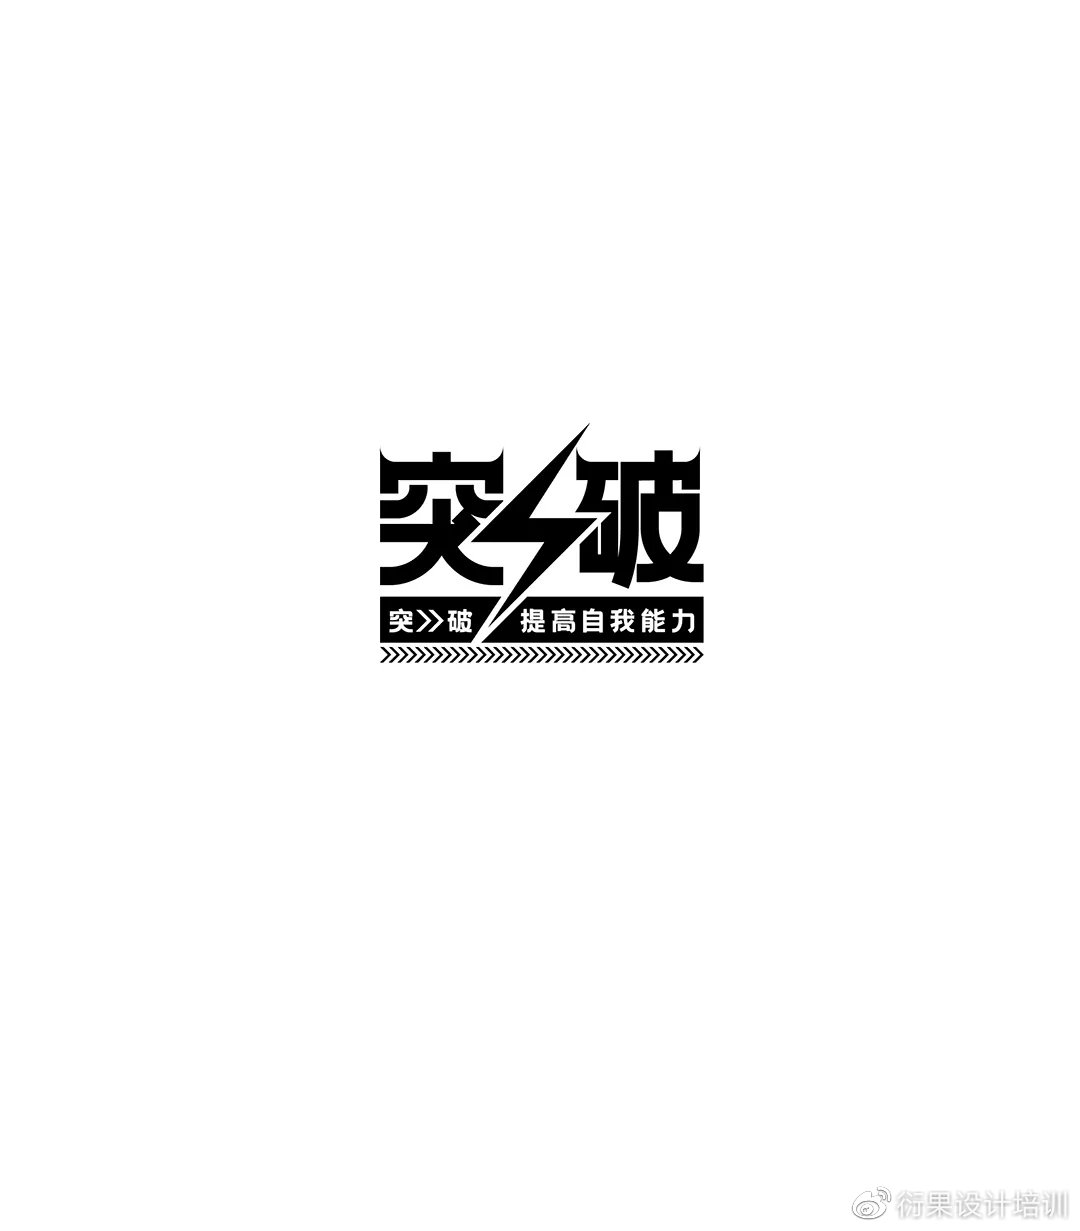 【字体设计】中文汉字形态创意设计技巧